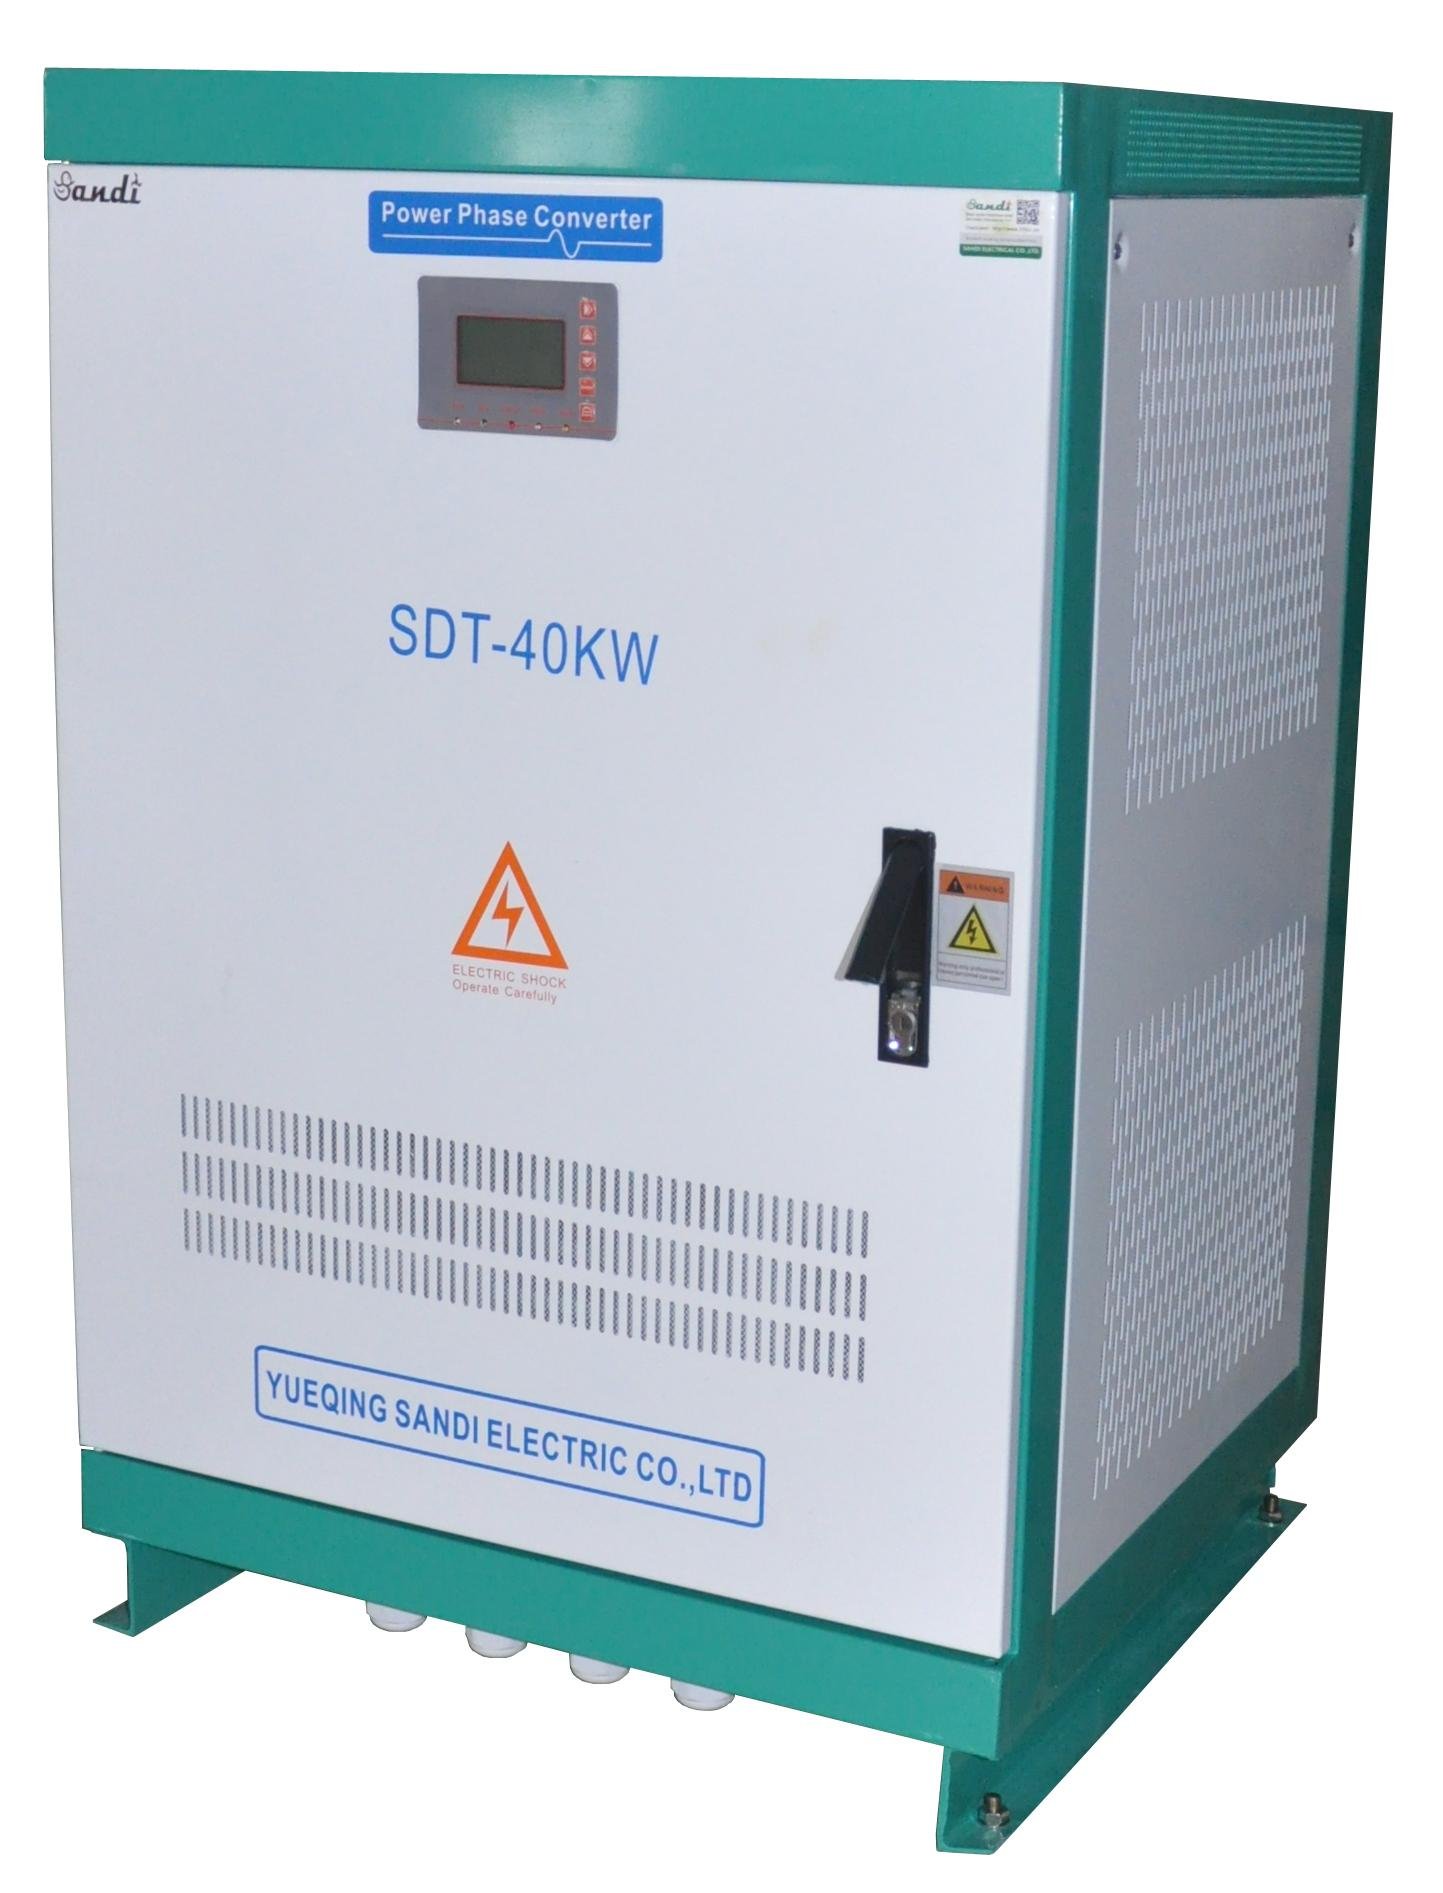 SANDI SDT-40KW Converter 220VAC to 120/240VAC split phase output